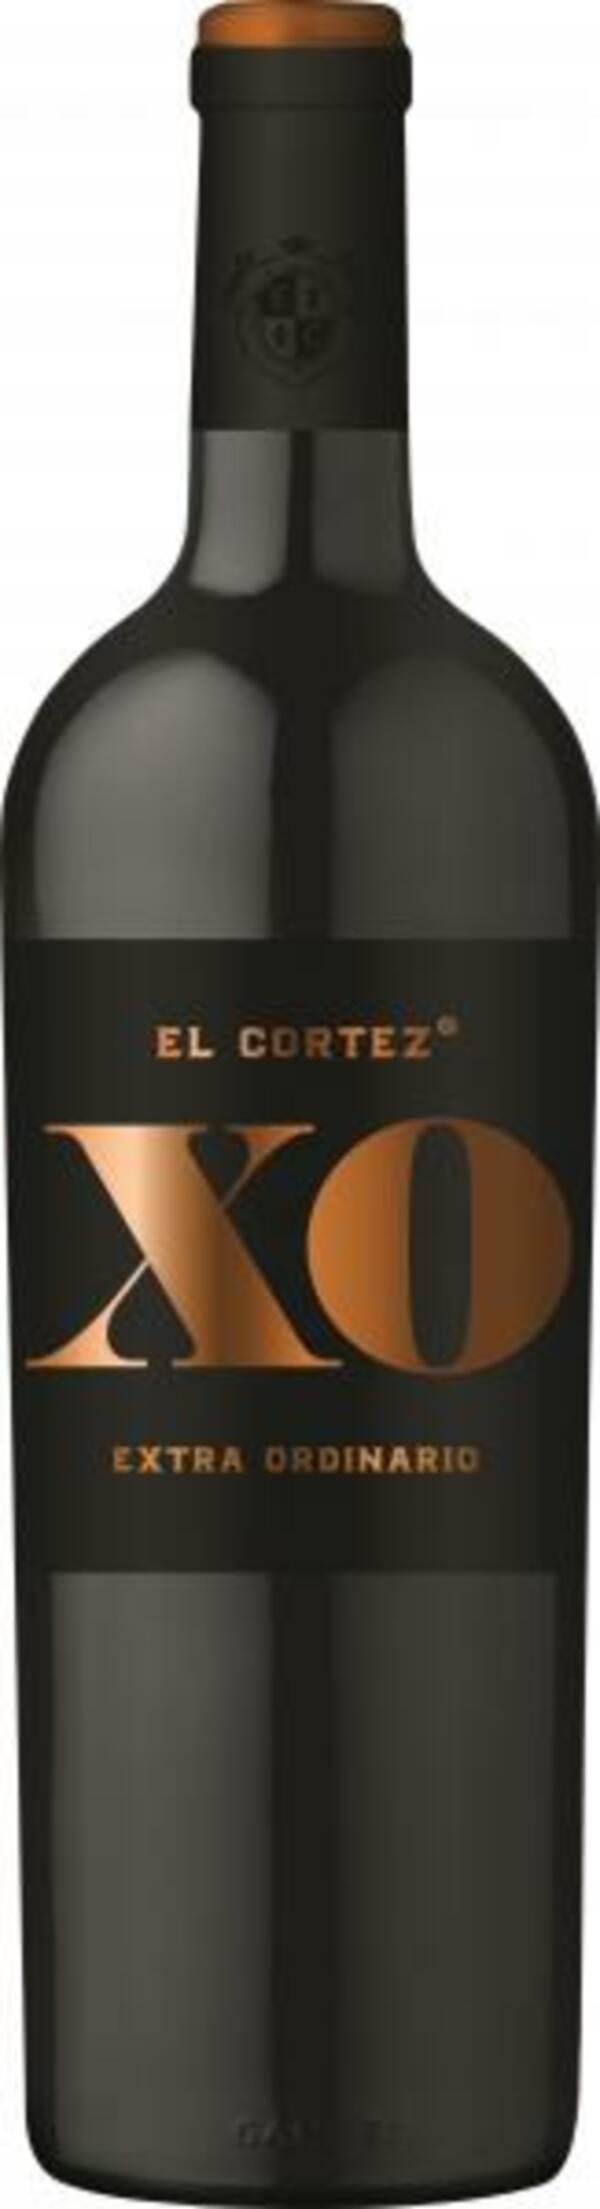 Bild 1 von El Cortez XO Extra Ordinario Rotwein halbtrocken